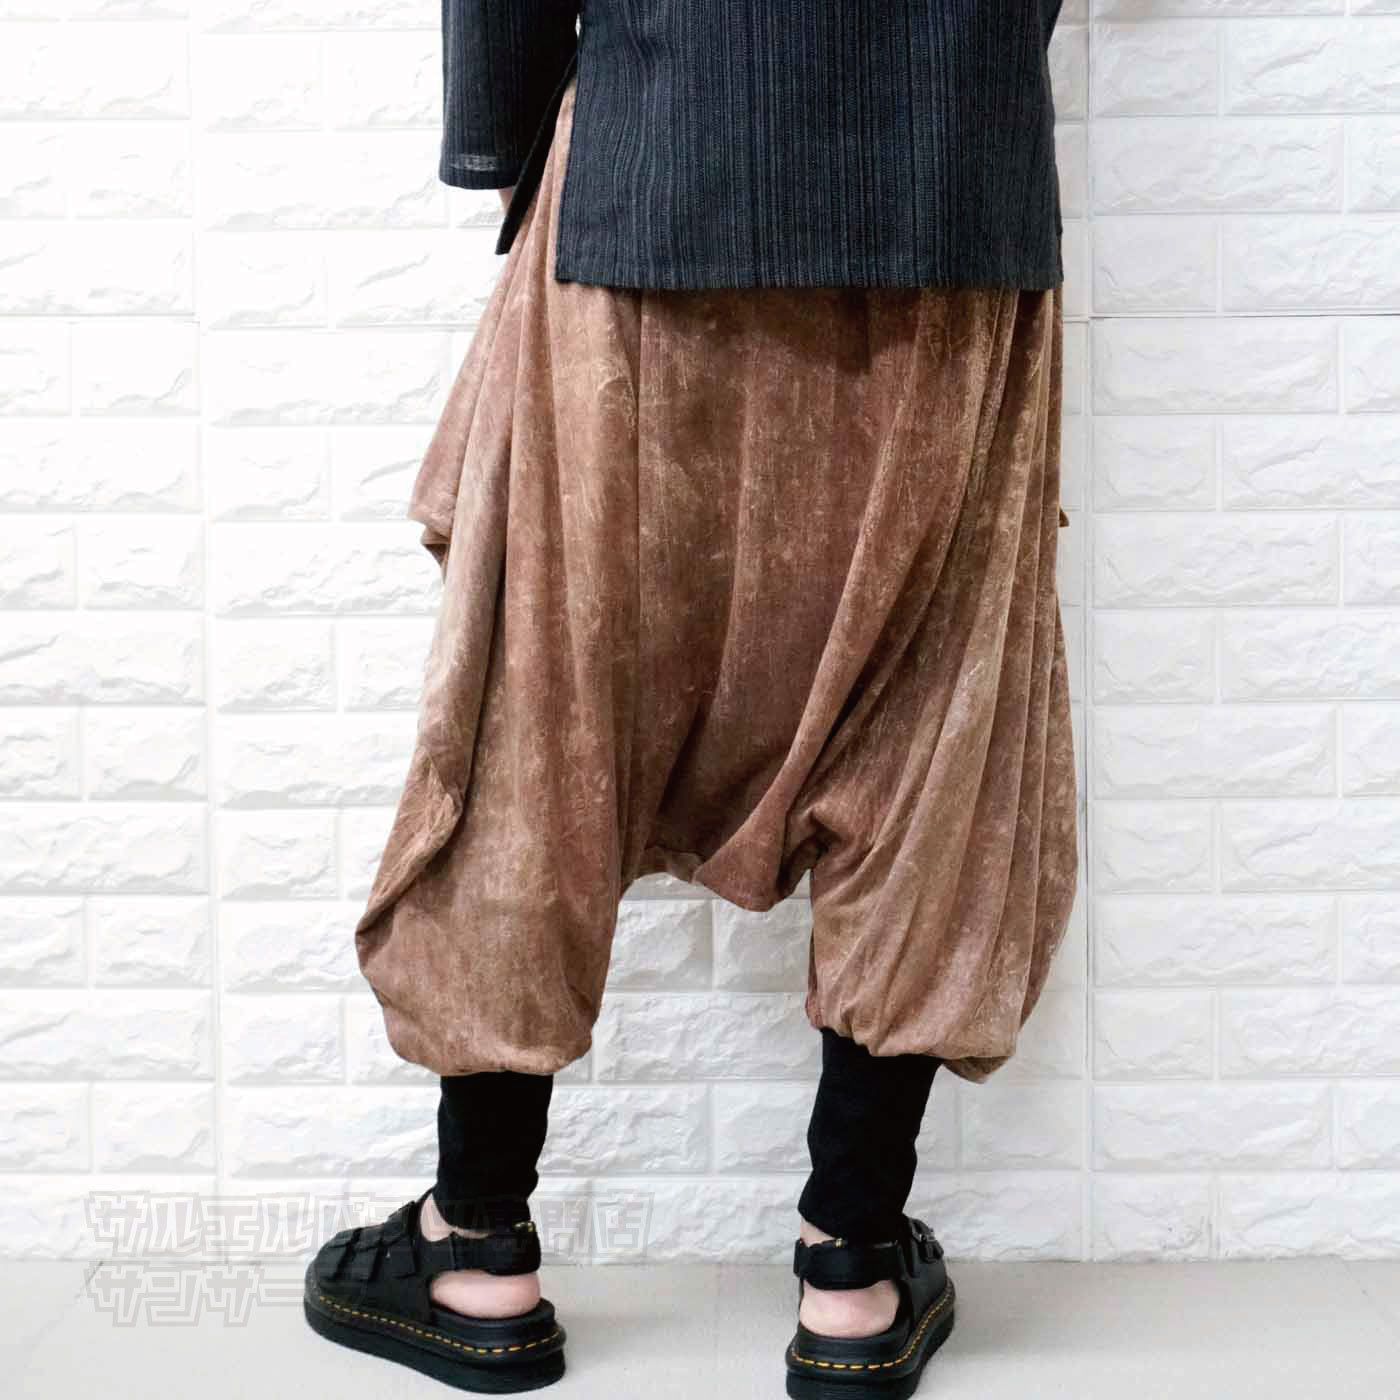 サルエルパンツ メンズ レディース 変型パンツ 変形パンツ アラジンパンツ ストーンウォッシュ アジアン エスニック ファッションブルー